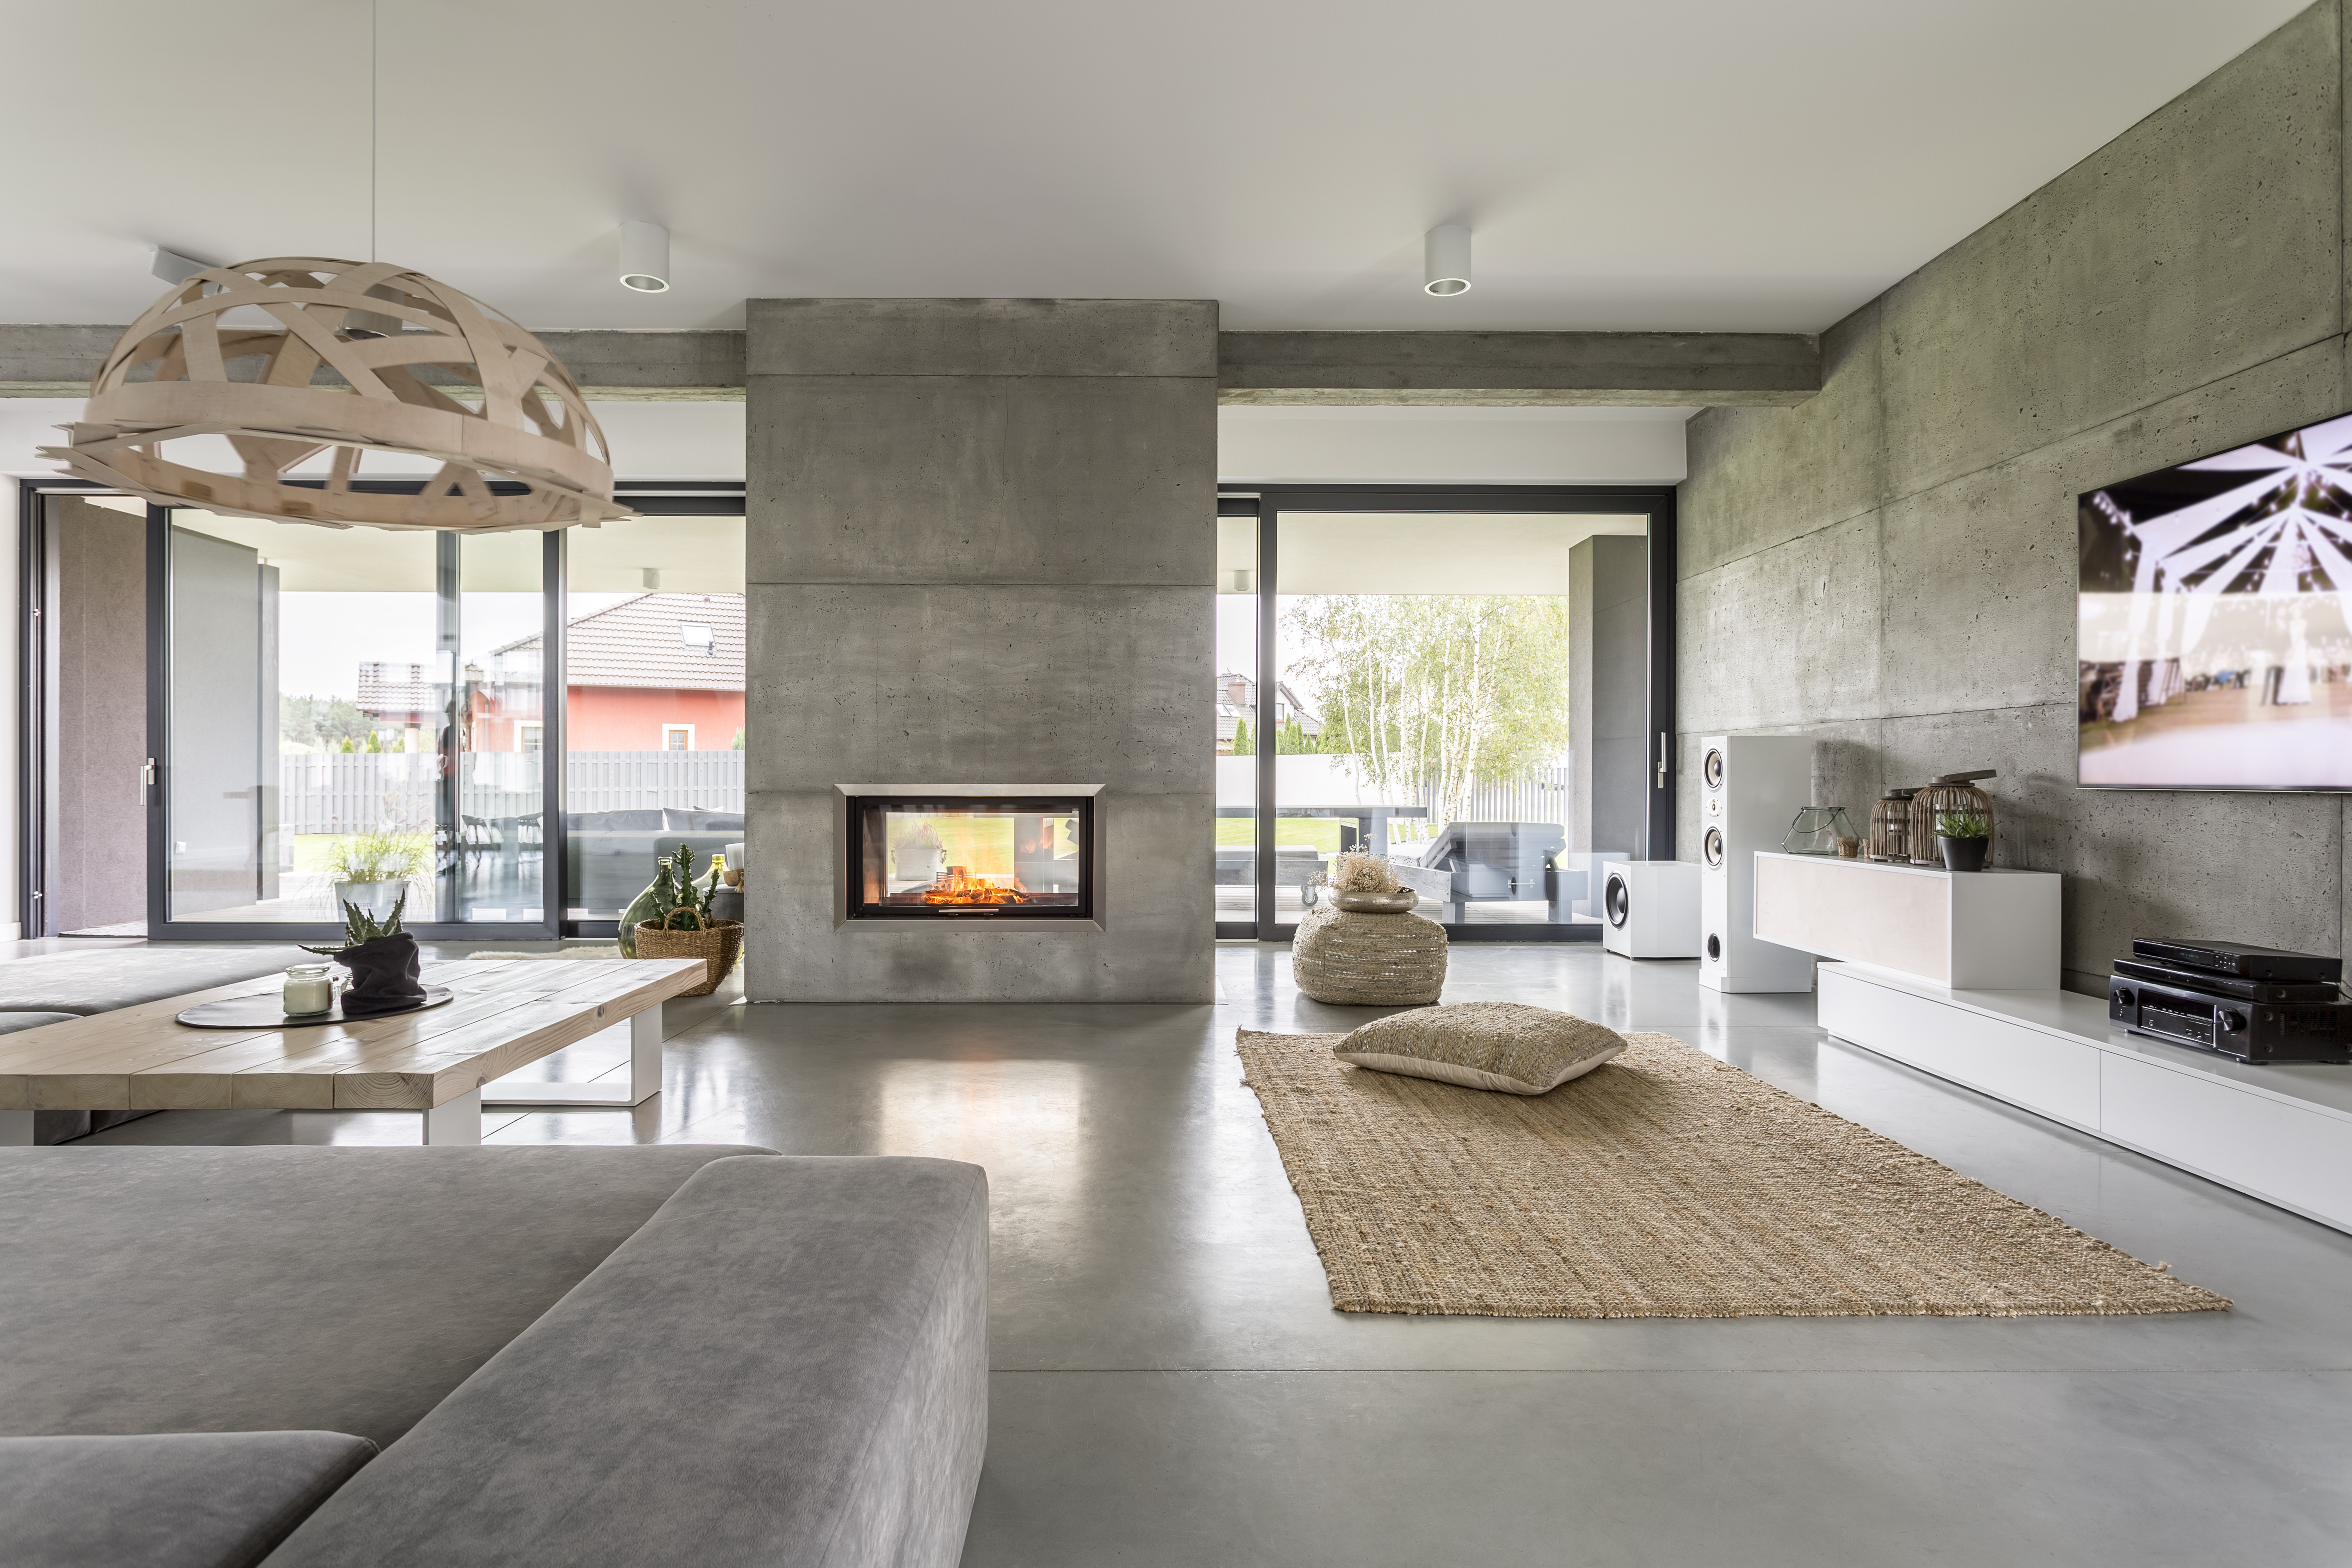 Interior de chalet espacioso con efecto de pared de cemento, chimenea y tv.| Fuente: Shutterstock